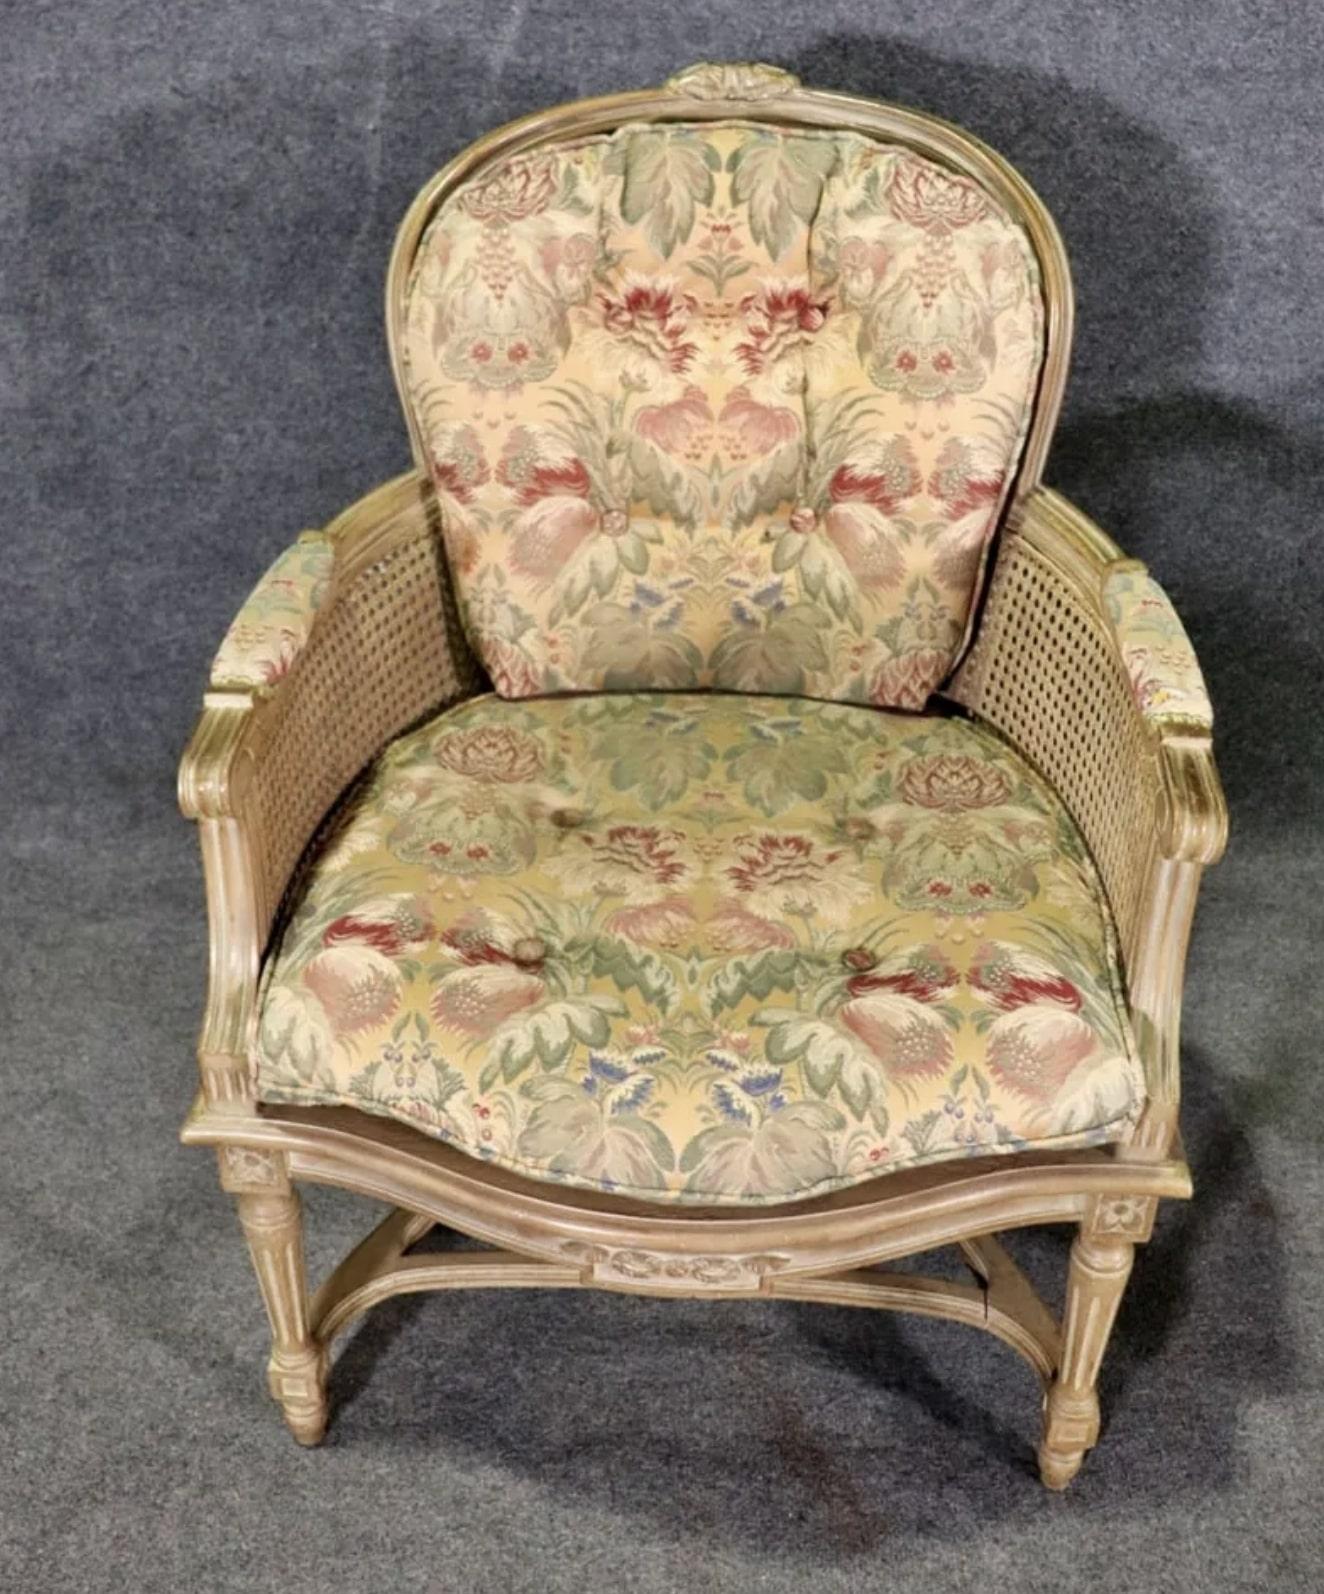 Ein Paar Vintage-Sessel mit gepolsterten Sitzen, Seiten und Rückenlehnen. Die gepolsterten Sitze und das Rückenkissen passen zu den Armlehnen.
Bitte bestätigen Sie den Standort NY oder NJ